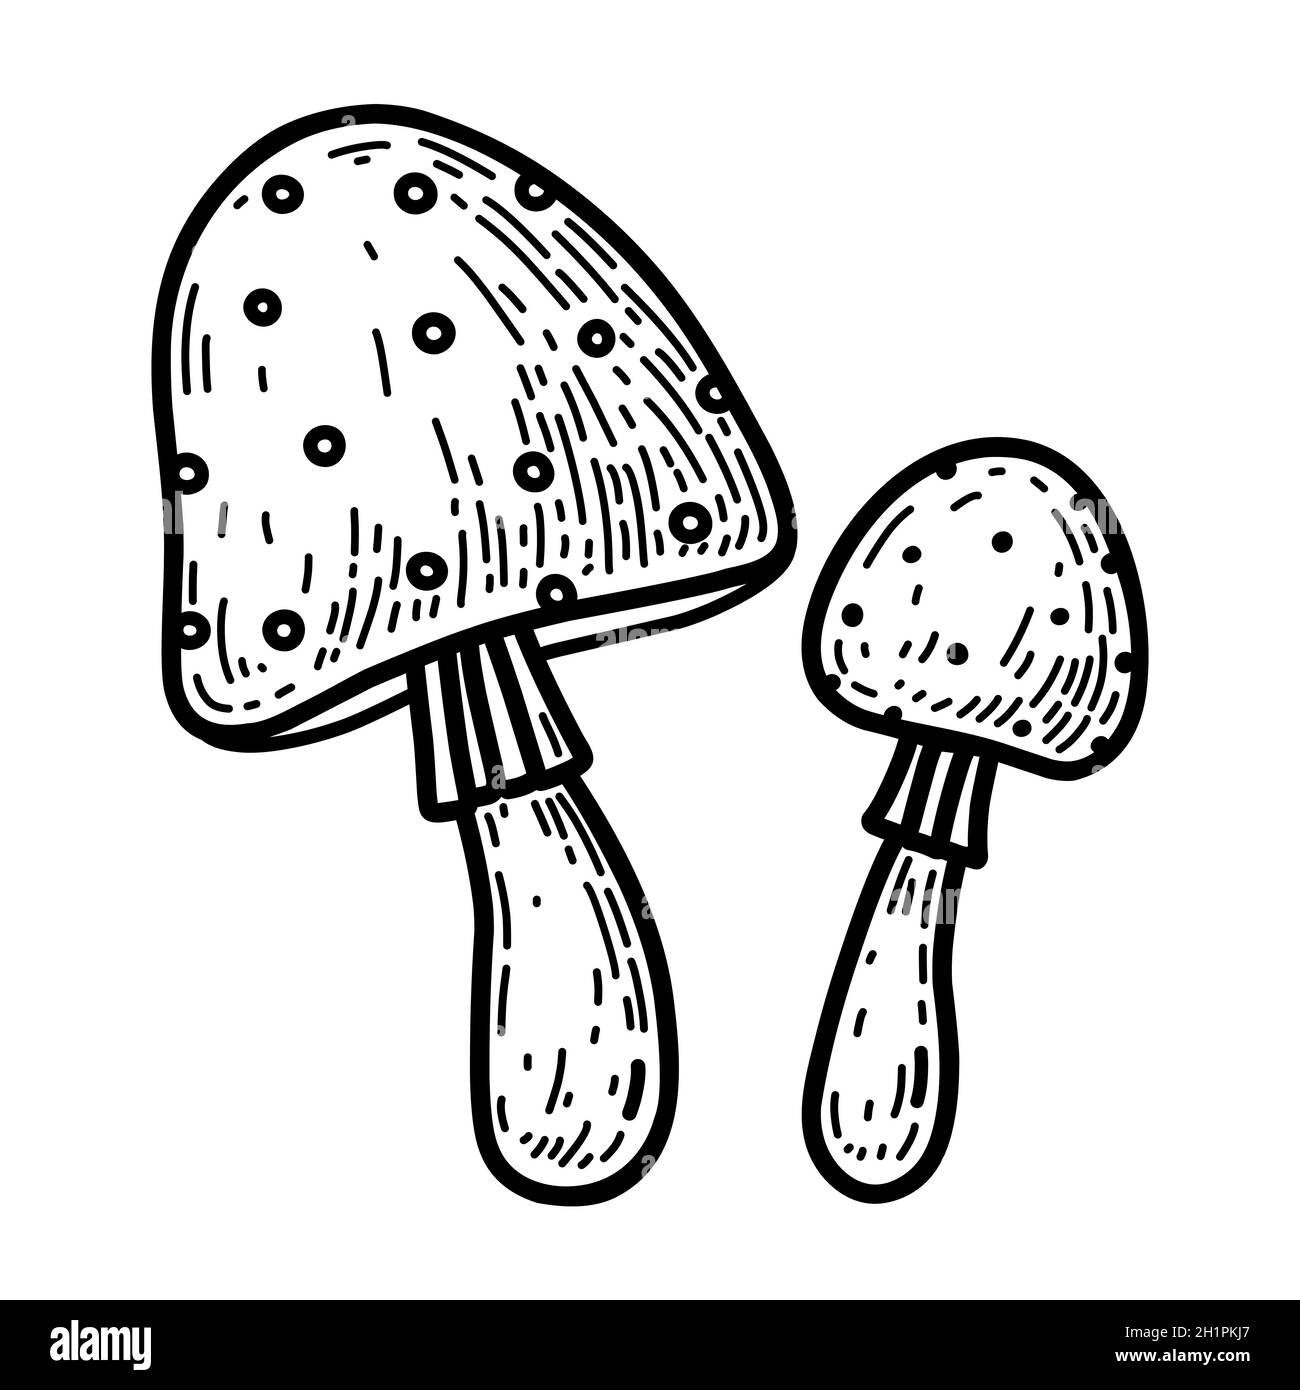 Zwei Cartoon-Amanita isoliert auf weißem Hintergrund. Giftige Waldpilze. Vektor-handgezeichnete Illustration im Doodle-Stil. Perfekt für Herbstdesigns, Karten, Logo, Dekorationen. Stock Vektor